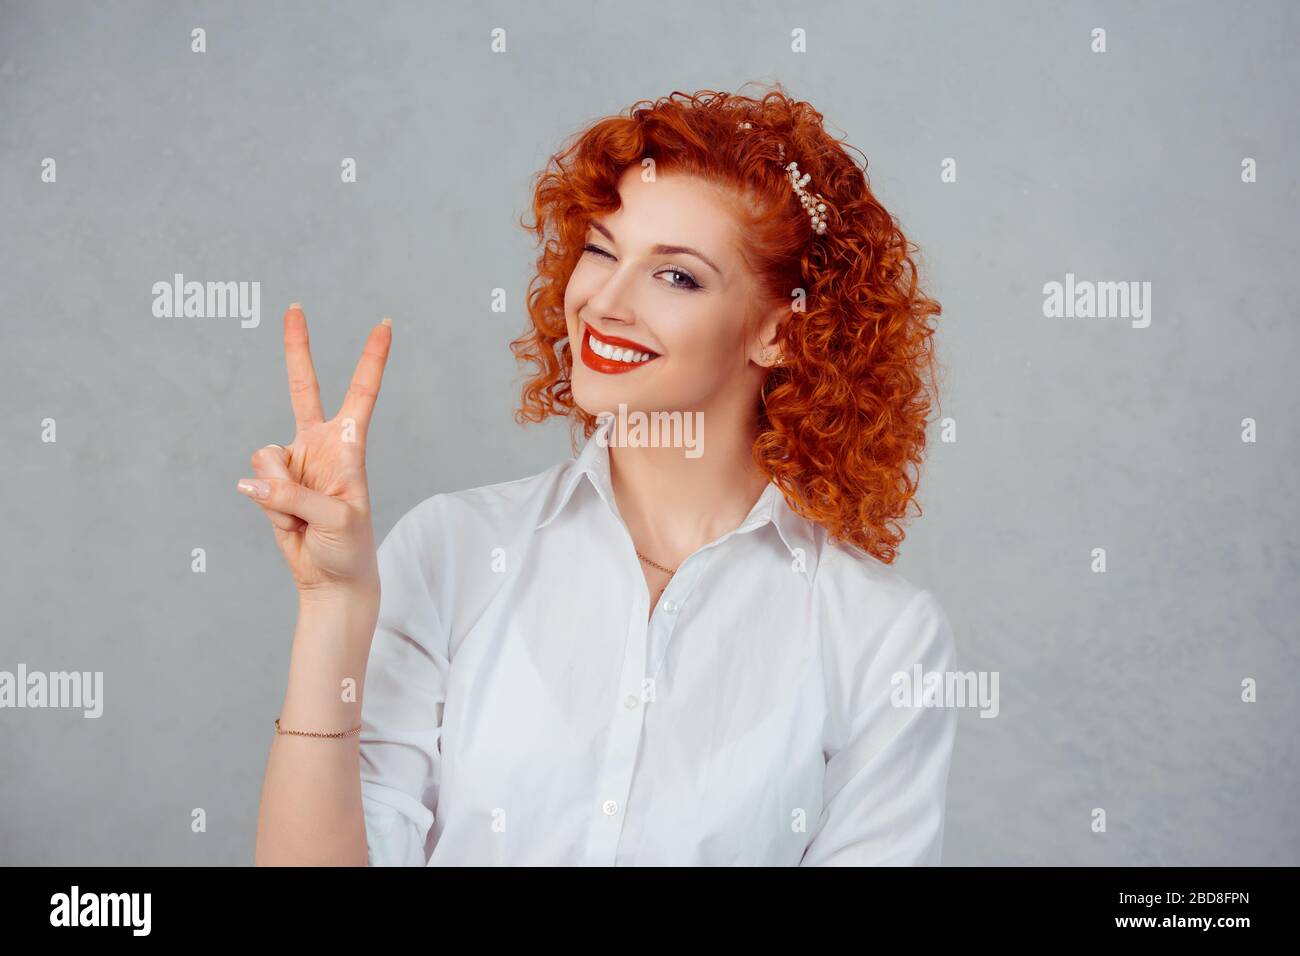 La niña atractiva está mostrando la señal de paz y sonriendo. Redhead rizado mujer de negocios guiñando y mirando la cámara de forma juguetonera. Aislado sobre fondo gris Foto de stock